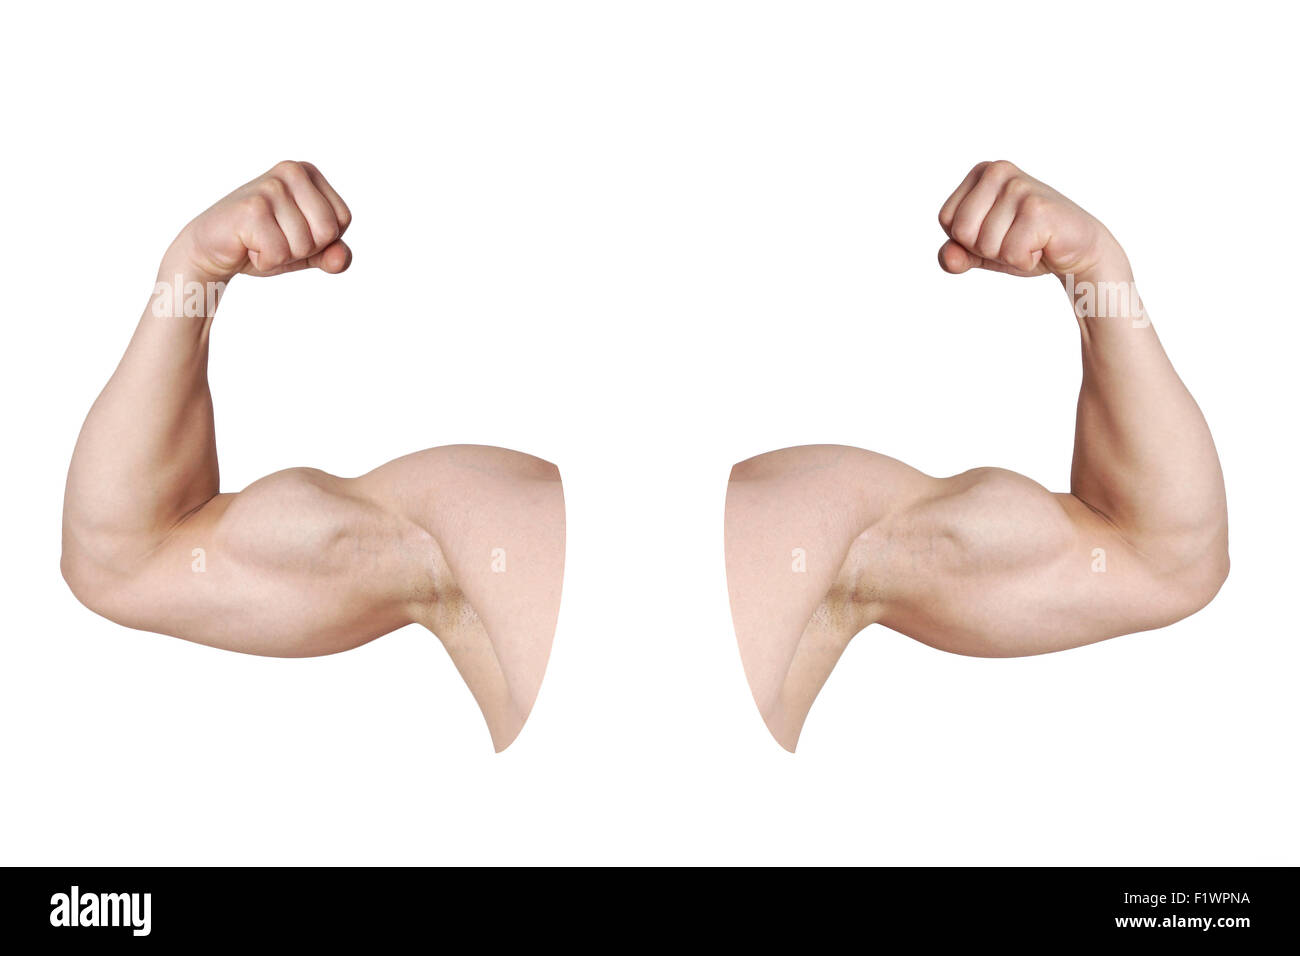 Les bras d'hommes avec des muscles biceps fléchi Banque D'Images